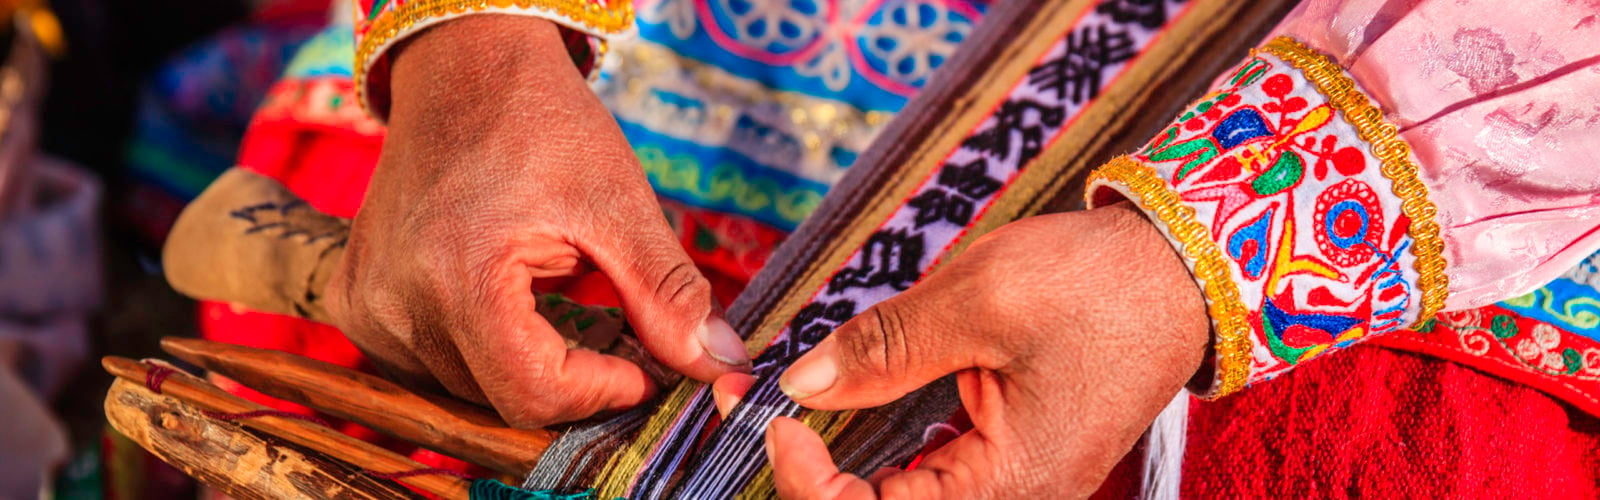 peruvian-woman-weaving